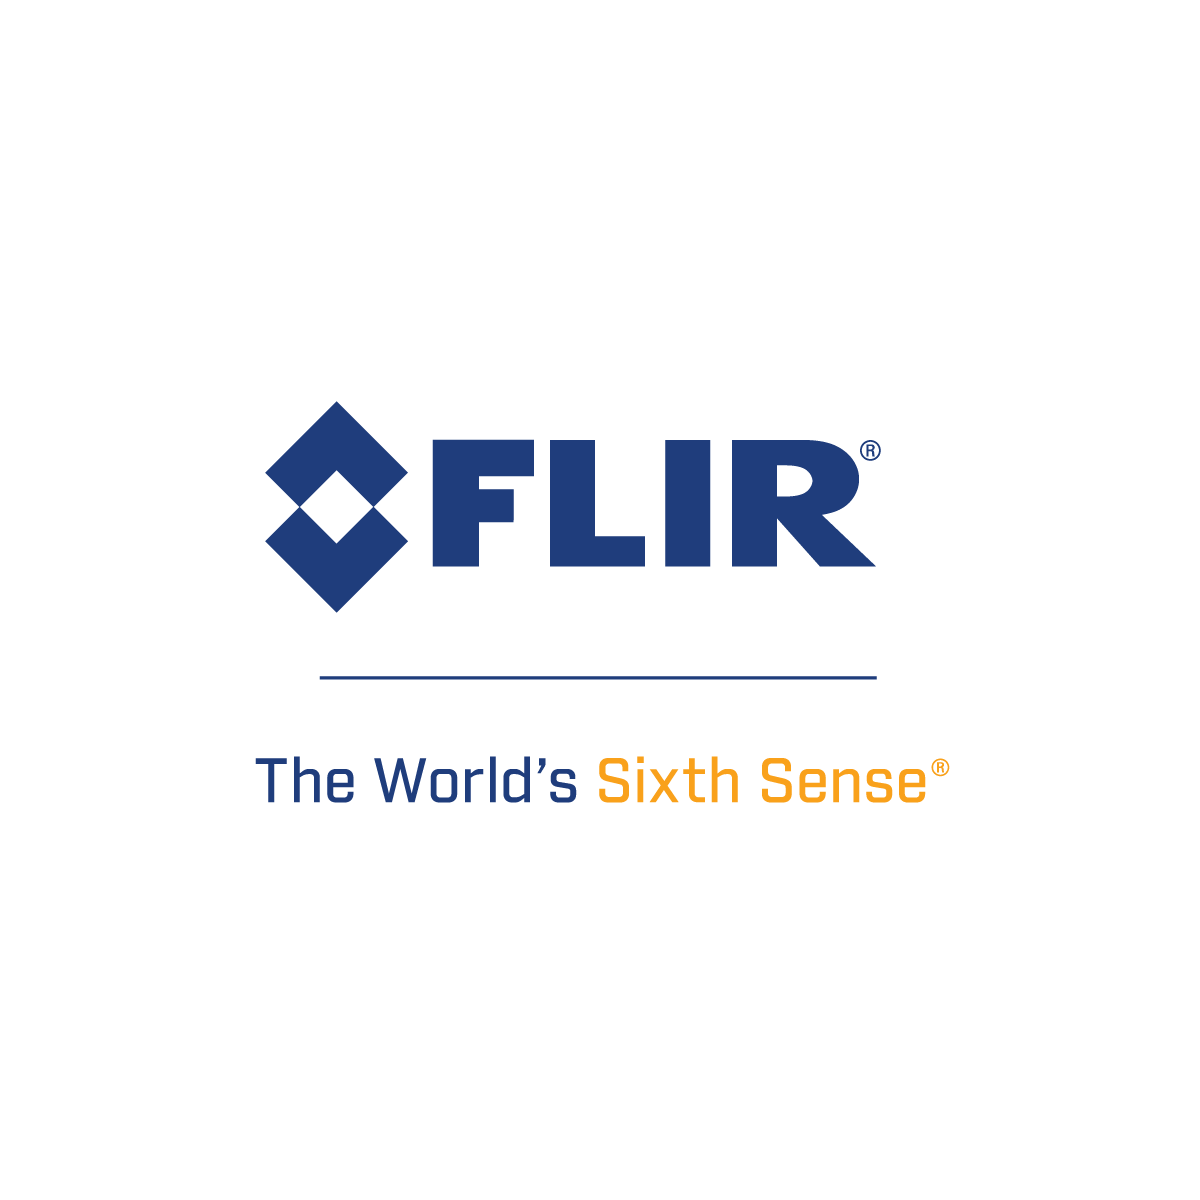 FLIR Systesm, Inc